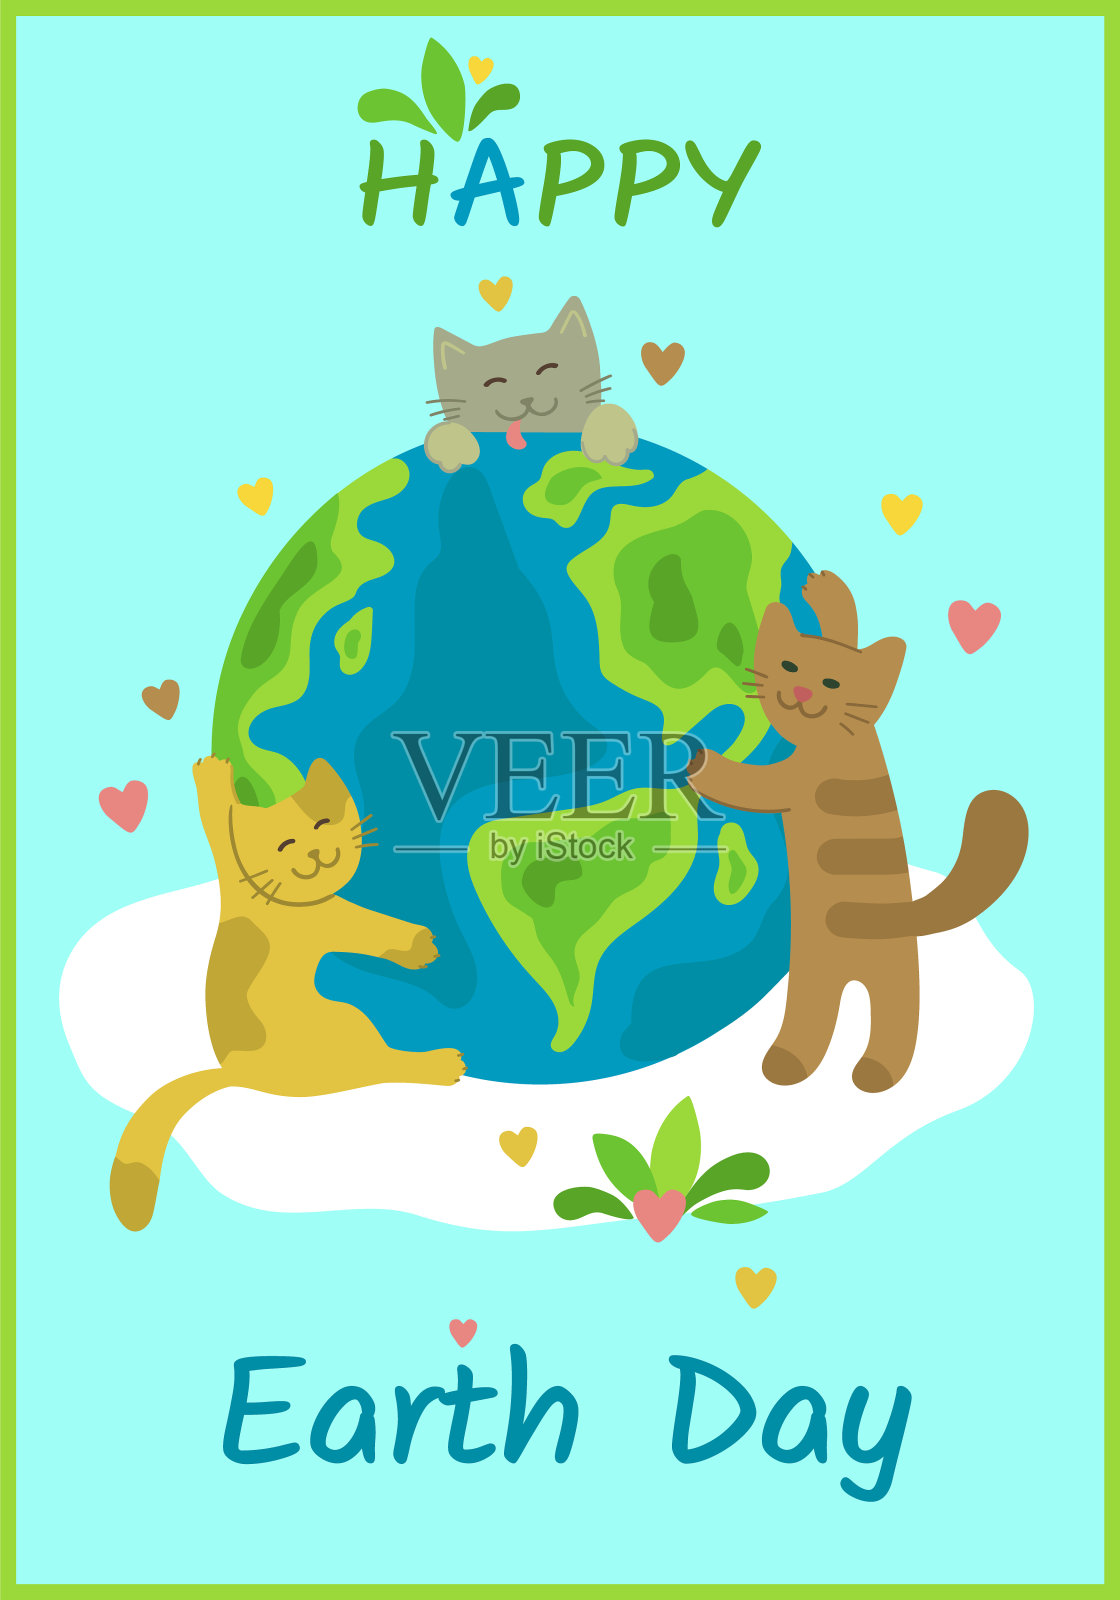 地球日快乐贺卡。Сute猫在云上拥抱地球。宠物照顾地球。爱地球。拯救地球。矢量垂直设计旗帜，卡片海报。平的卡通风格插画图片素材